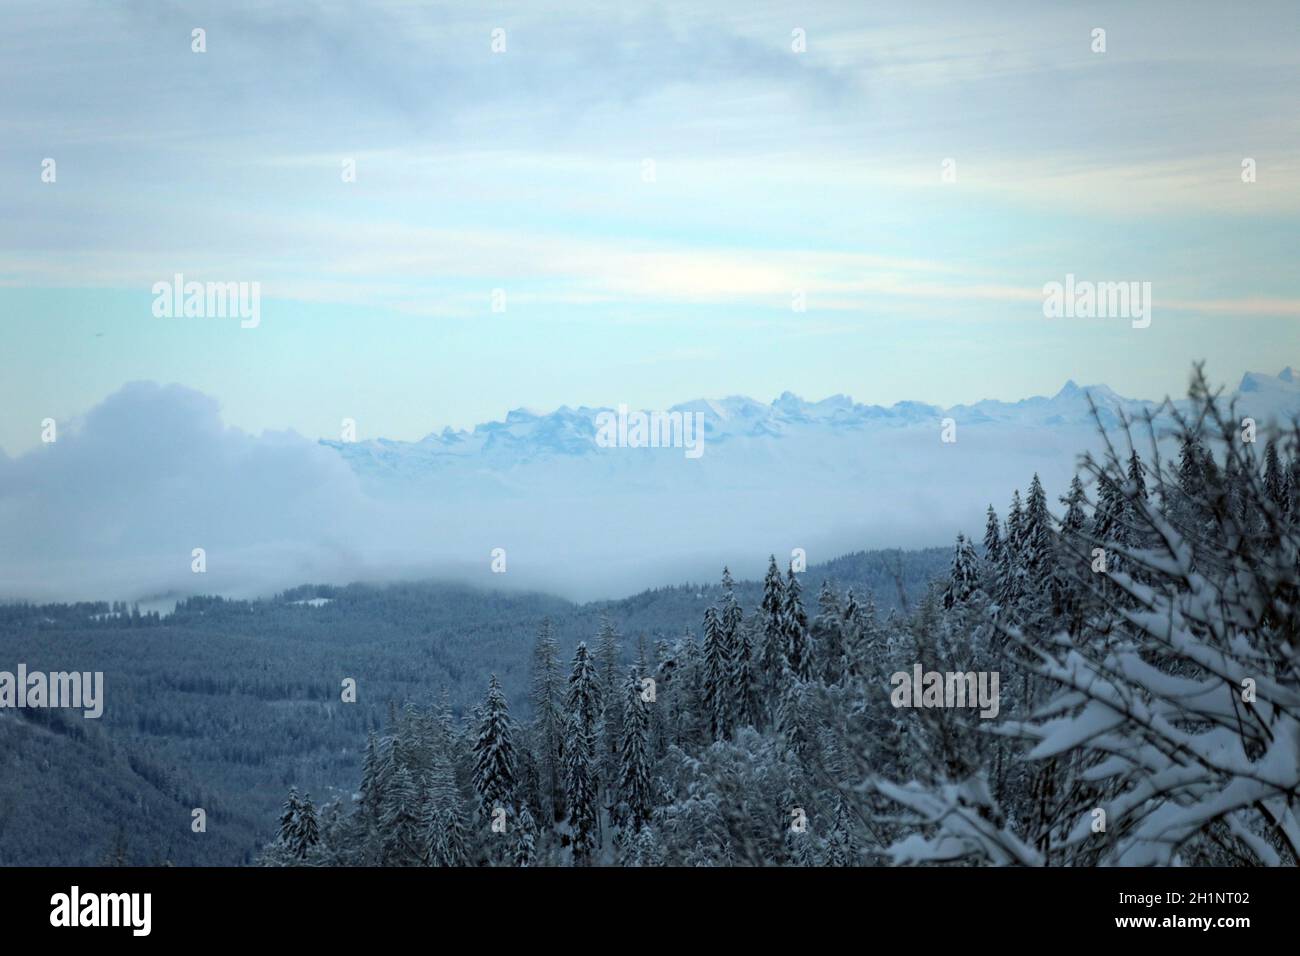 Themenbild - Wintereinbruch im Schwarzwald - Blick vom Feldberg über die Nebelschwaden des Rheintals hinüber zur Schweizer Bergwelt Foto Stock